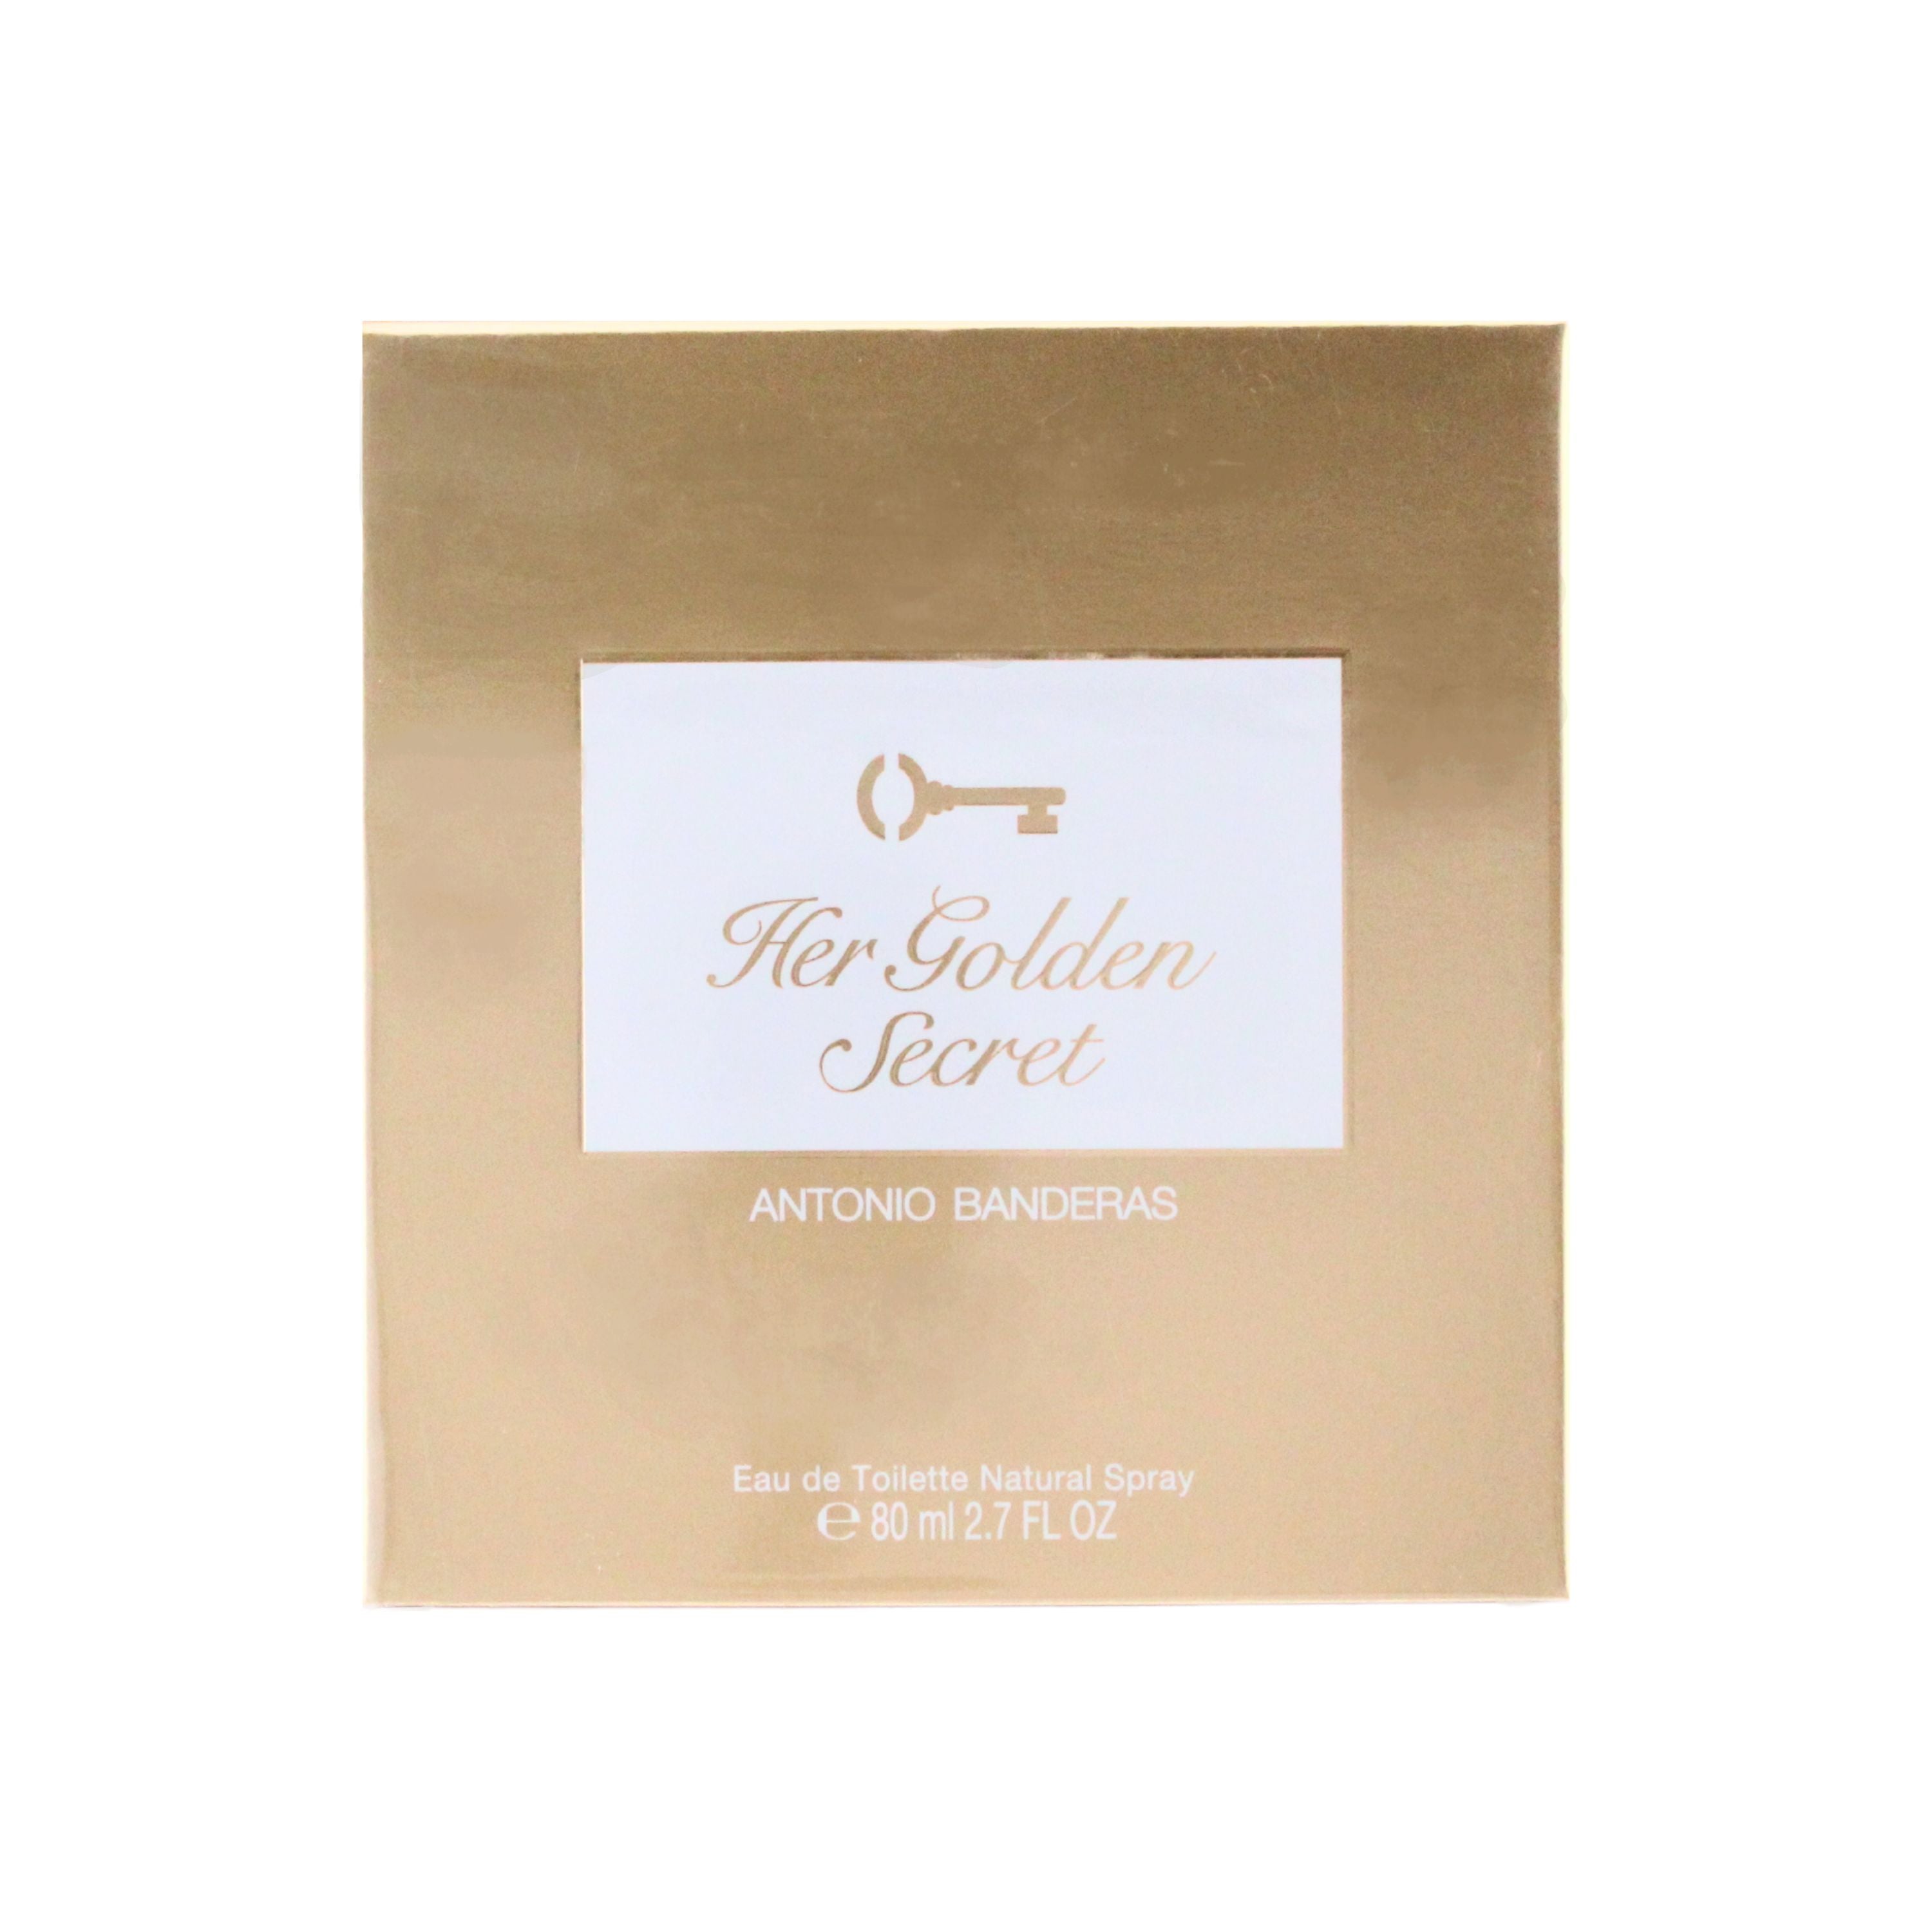 Antonio Banderas Her Golden Secret Eau de Toilette for Women